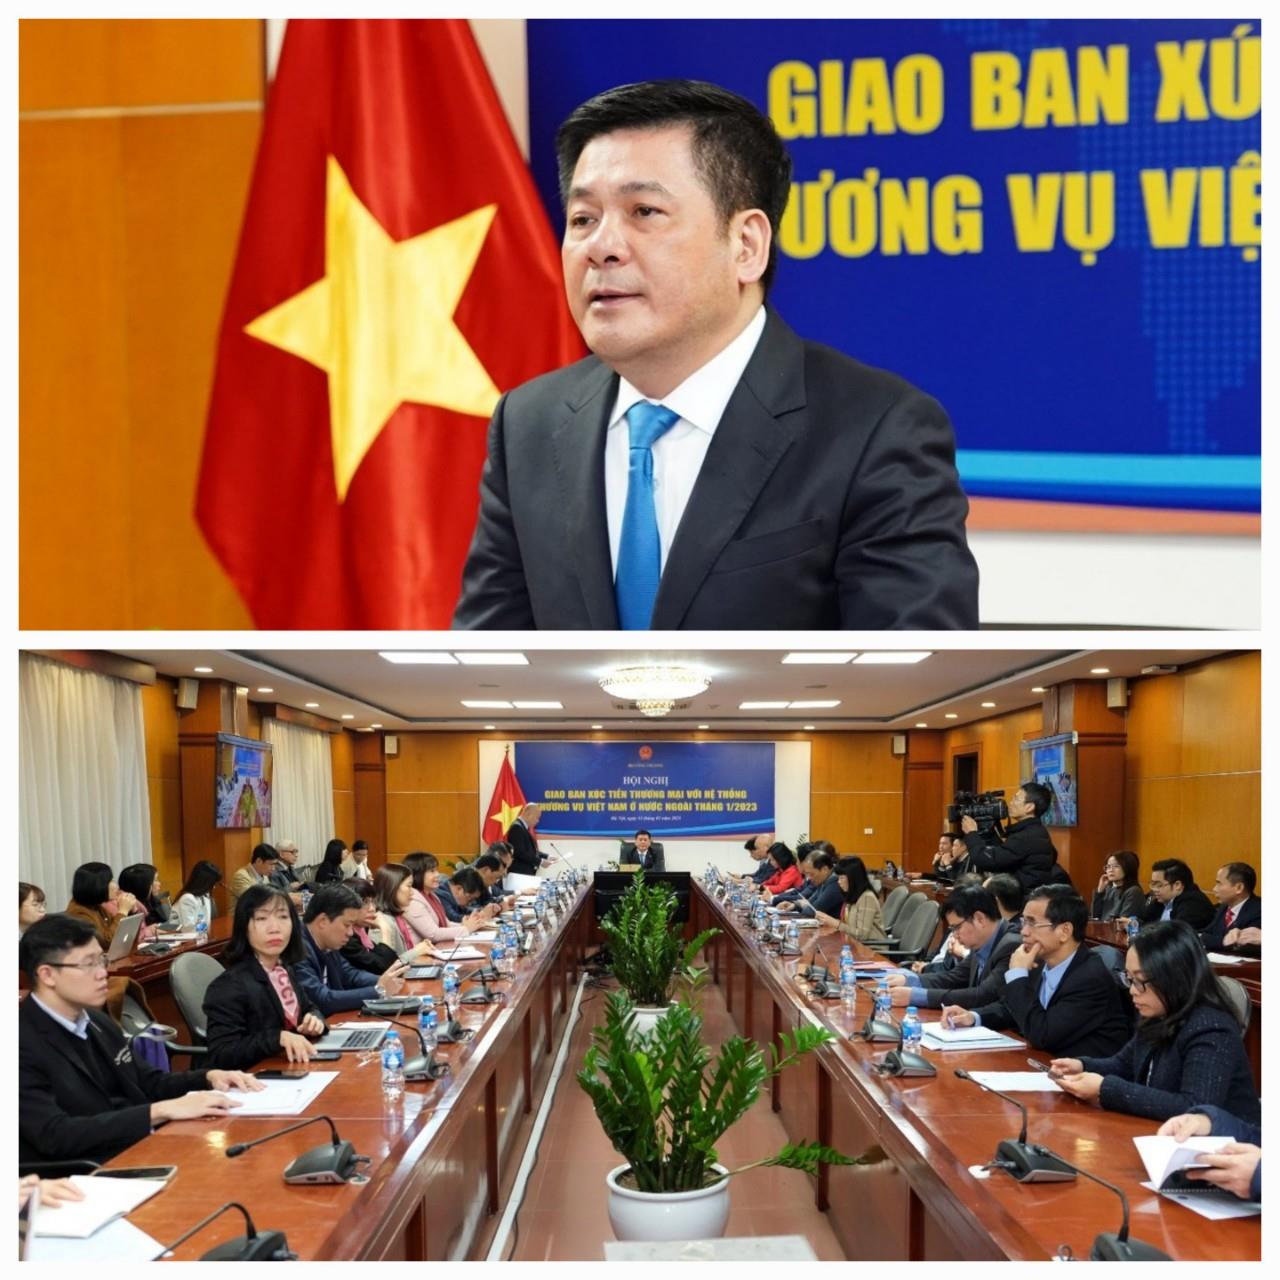 Bắc Giang tham dự Hội nghị giao ban xúc tiến thương mại với hệ thống Thương vụ Việt Nam ở nước ngoài tháng 1/2023